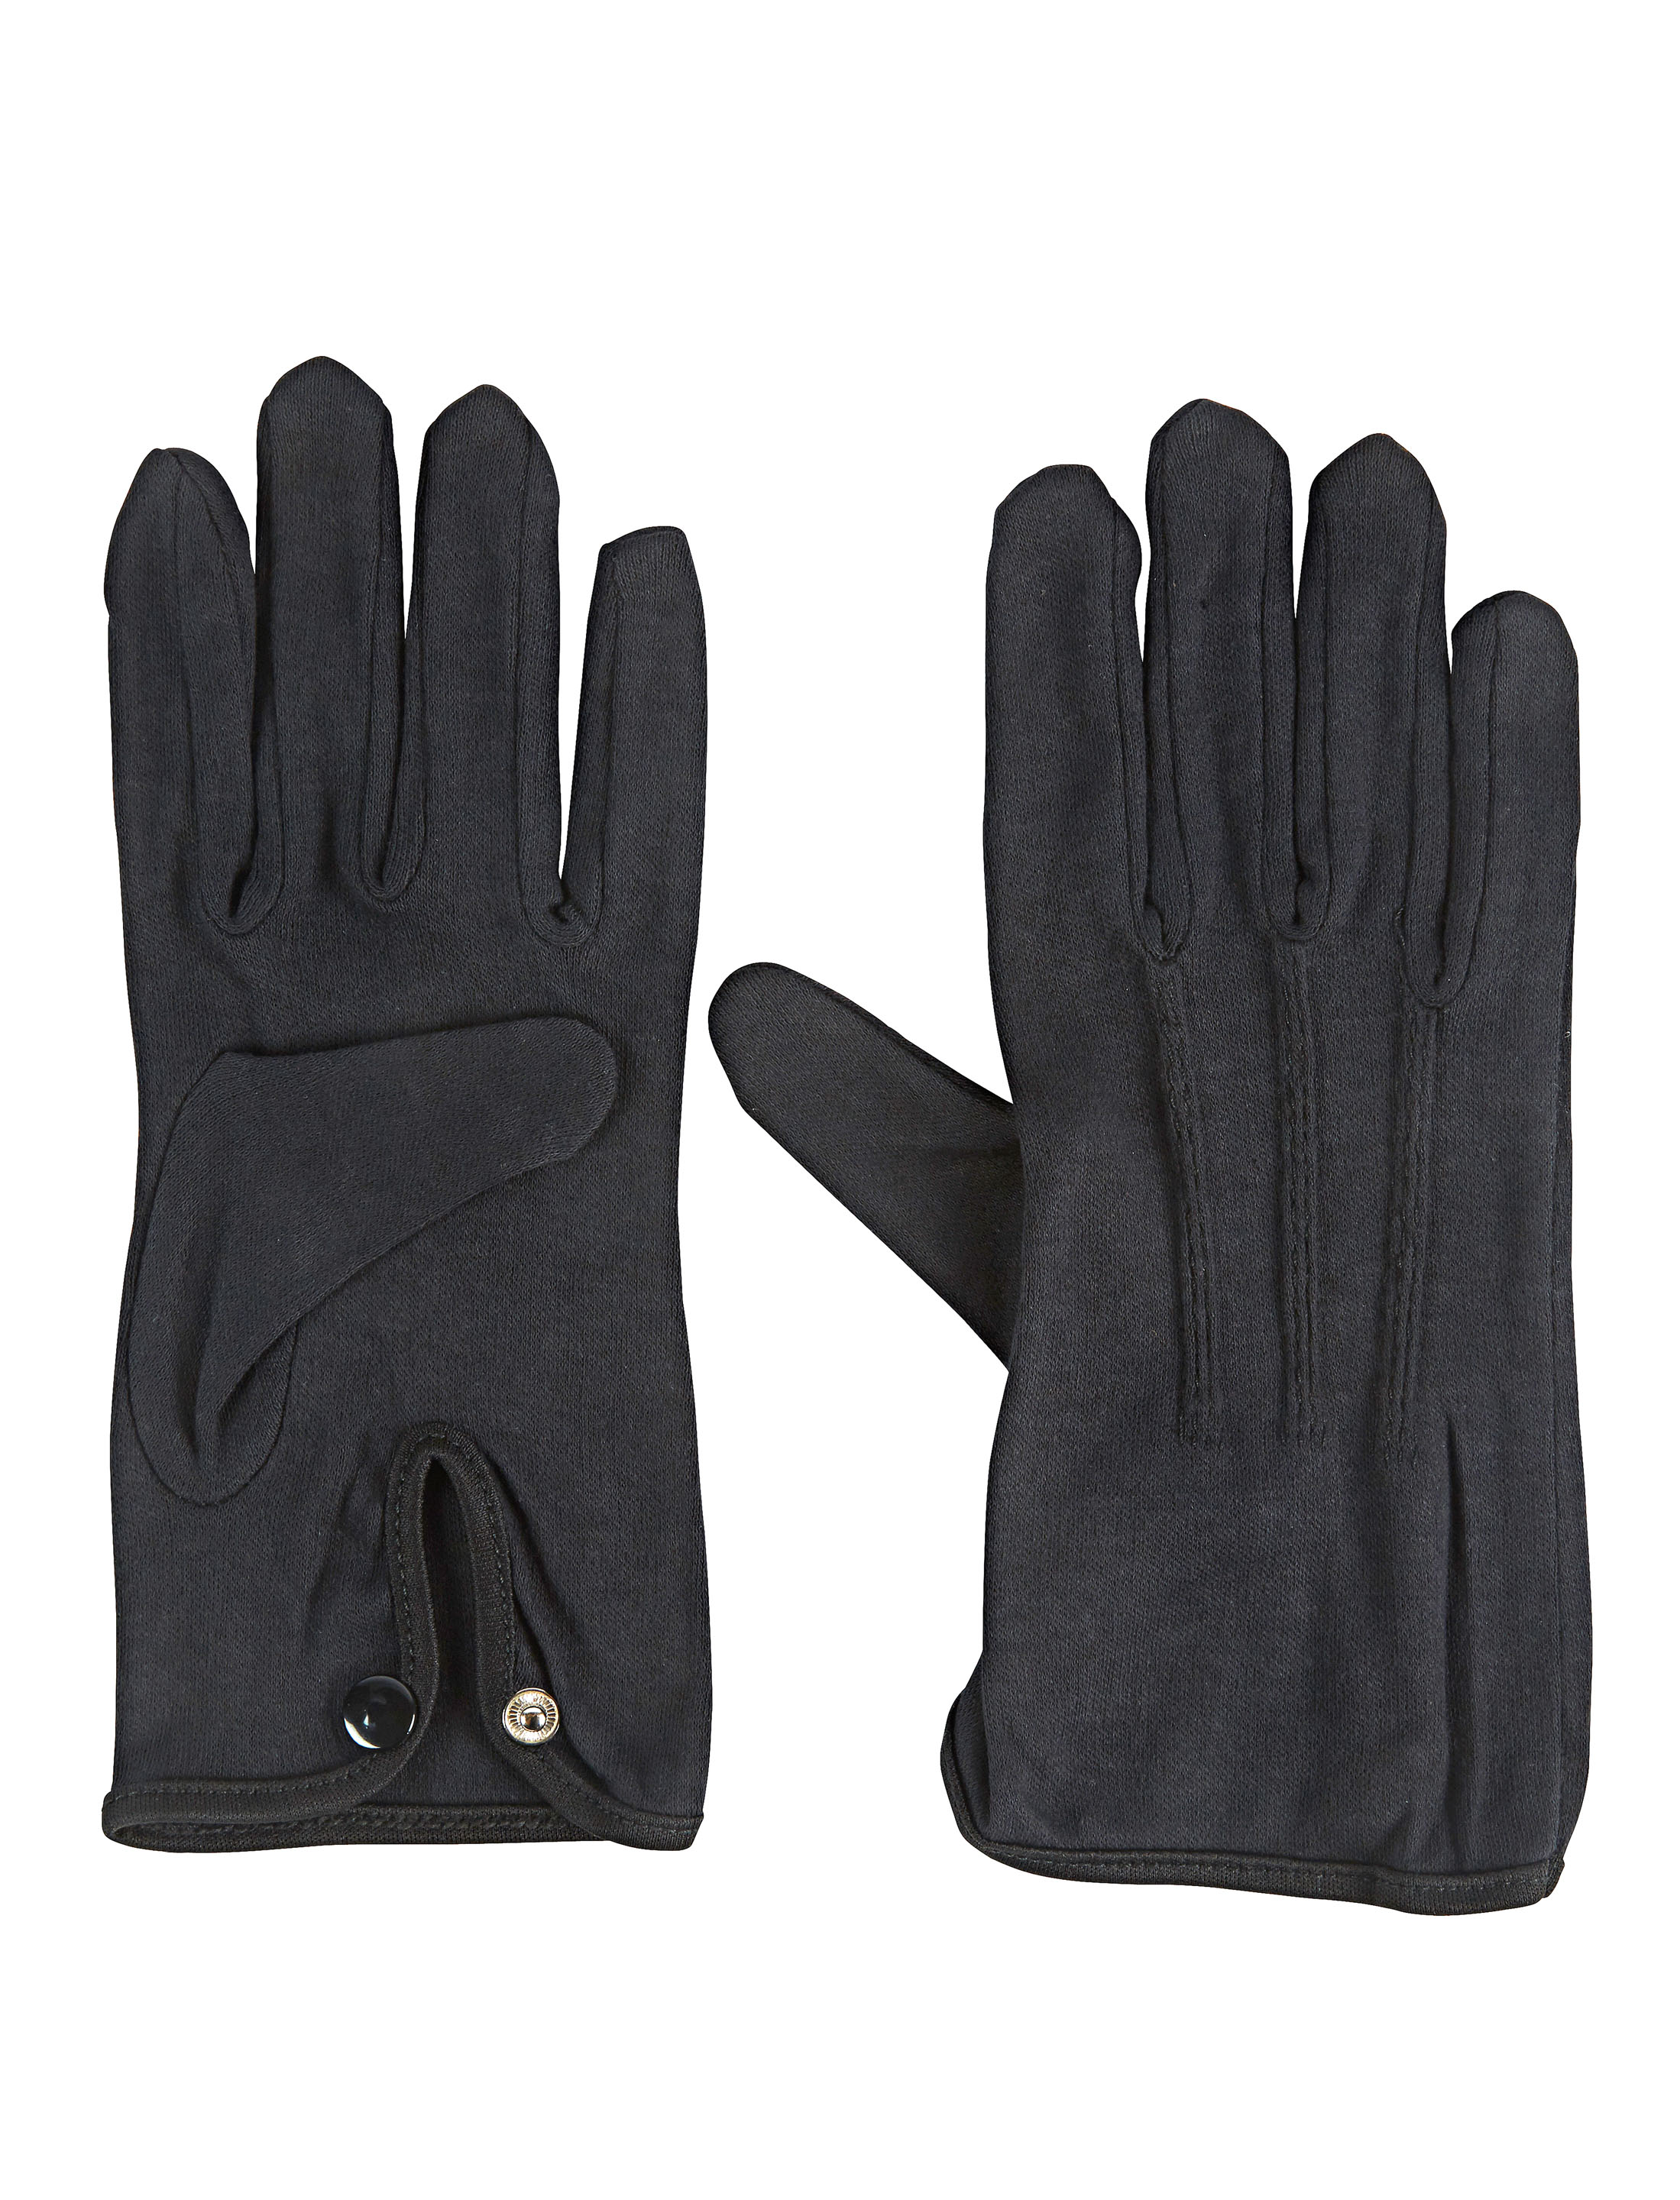 Handschuhe Baumwolle mit Knopf schwarz XXL